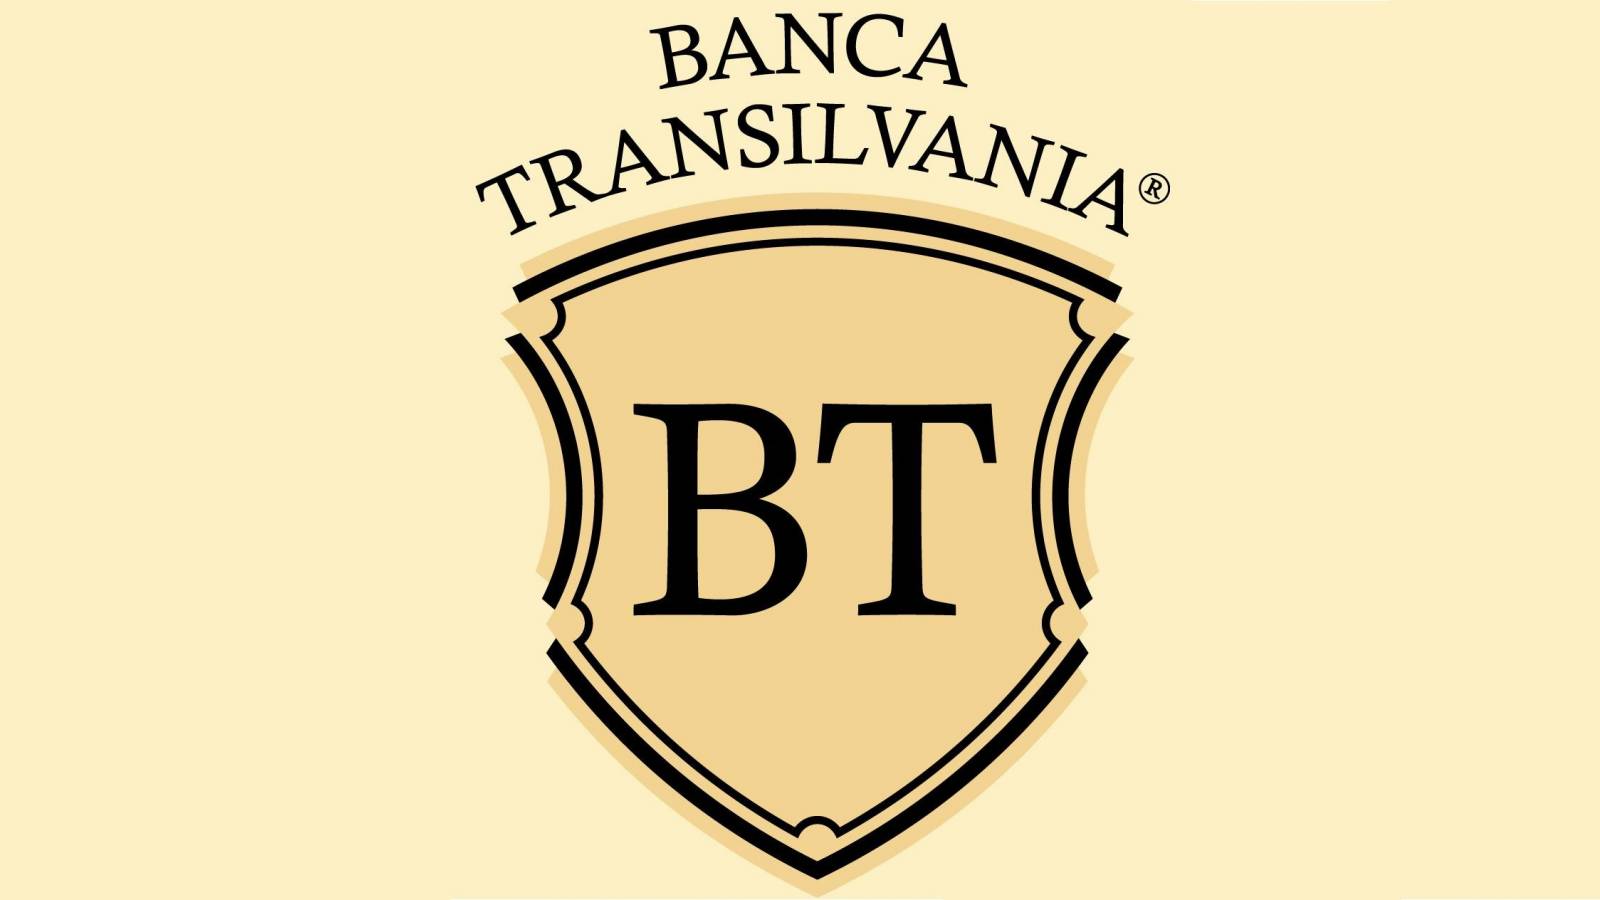 BANCA Transilvania 3 AVERTISSEMENTS OFFICIELS DE DERNIÈRE MINUTE Attention à tous les clients roumains